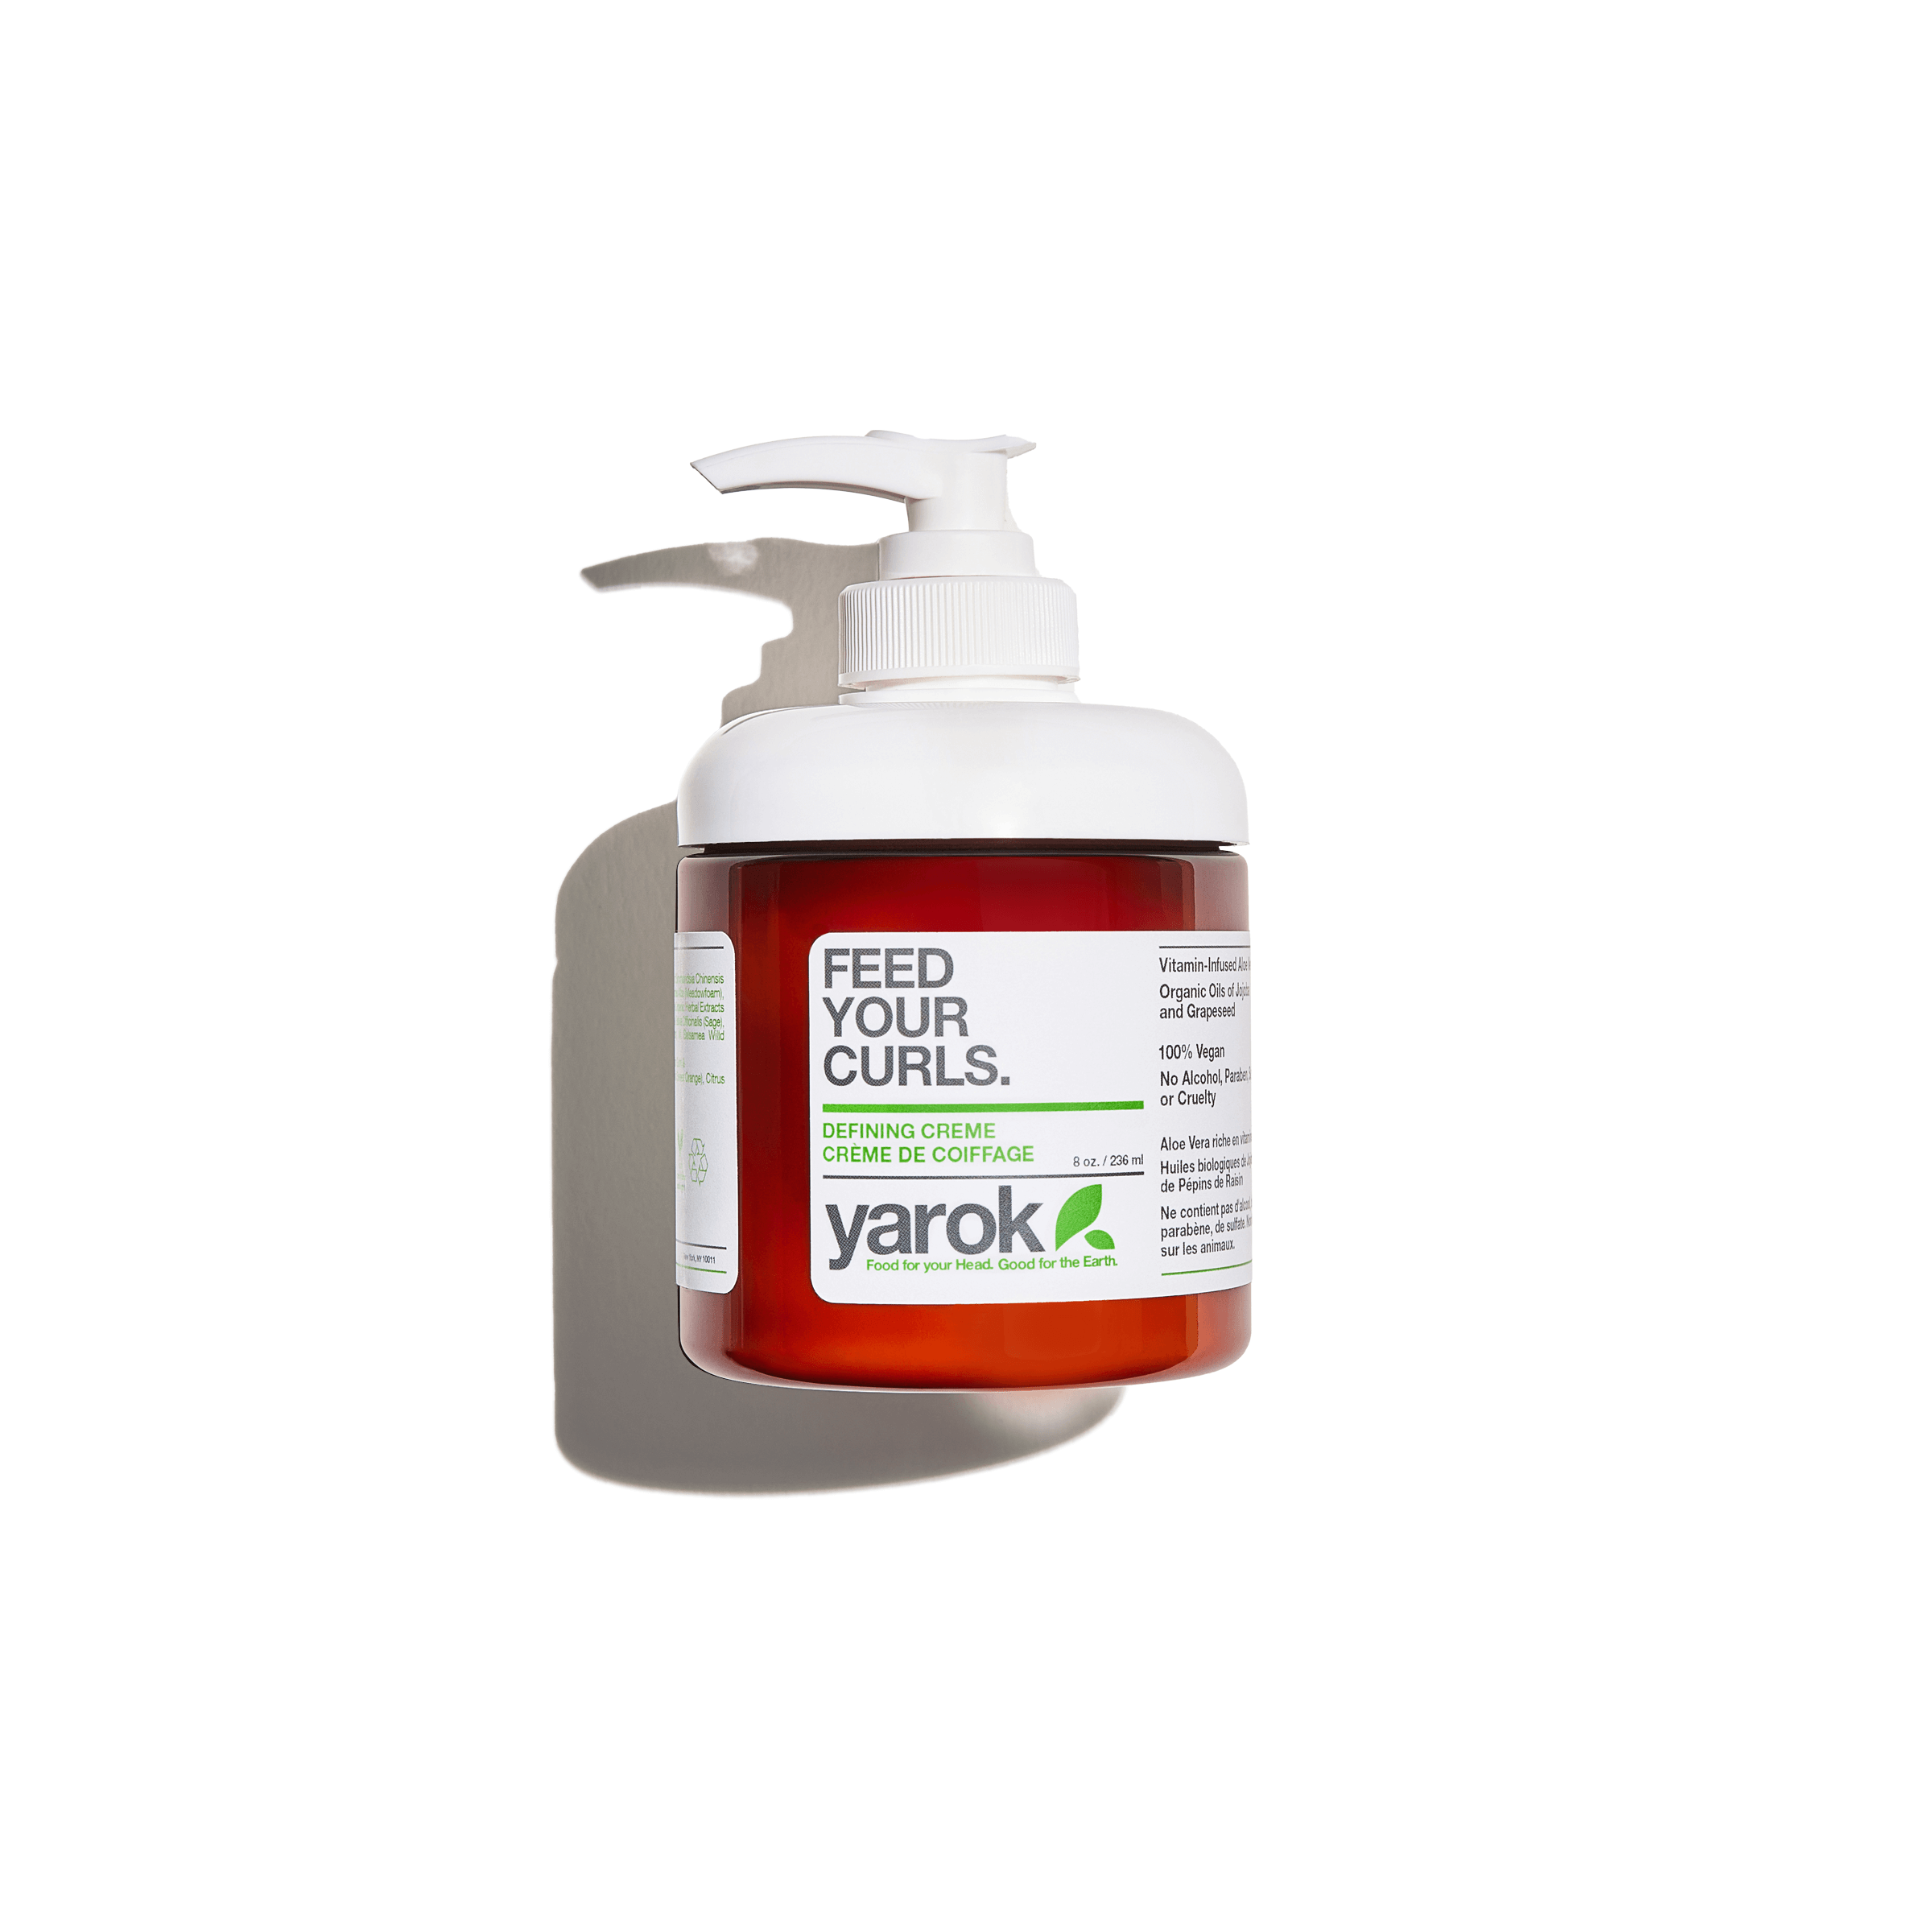 Wild Herb Emulsifying Wax is Vegetable Based